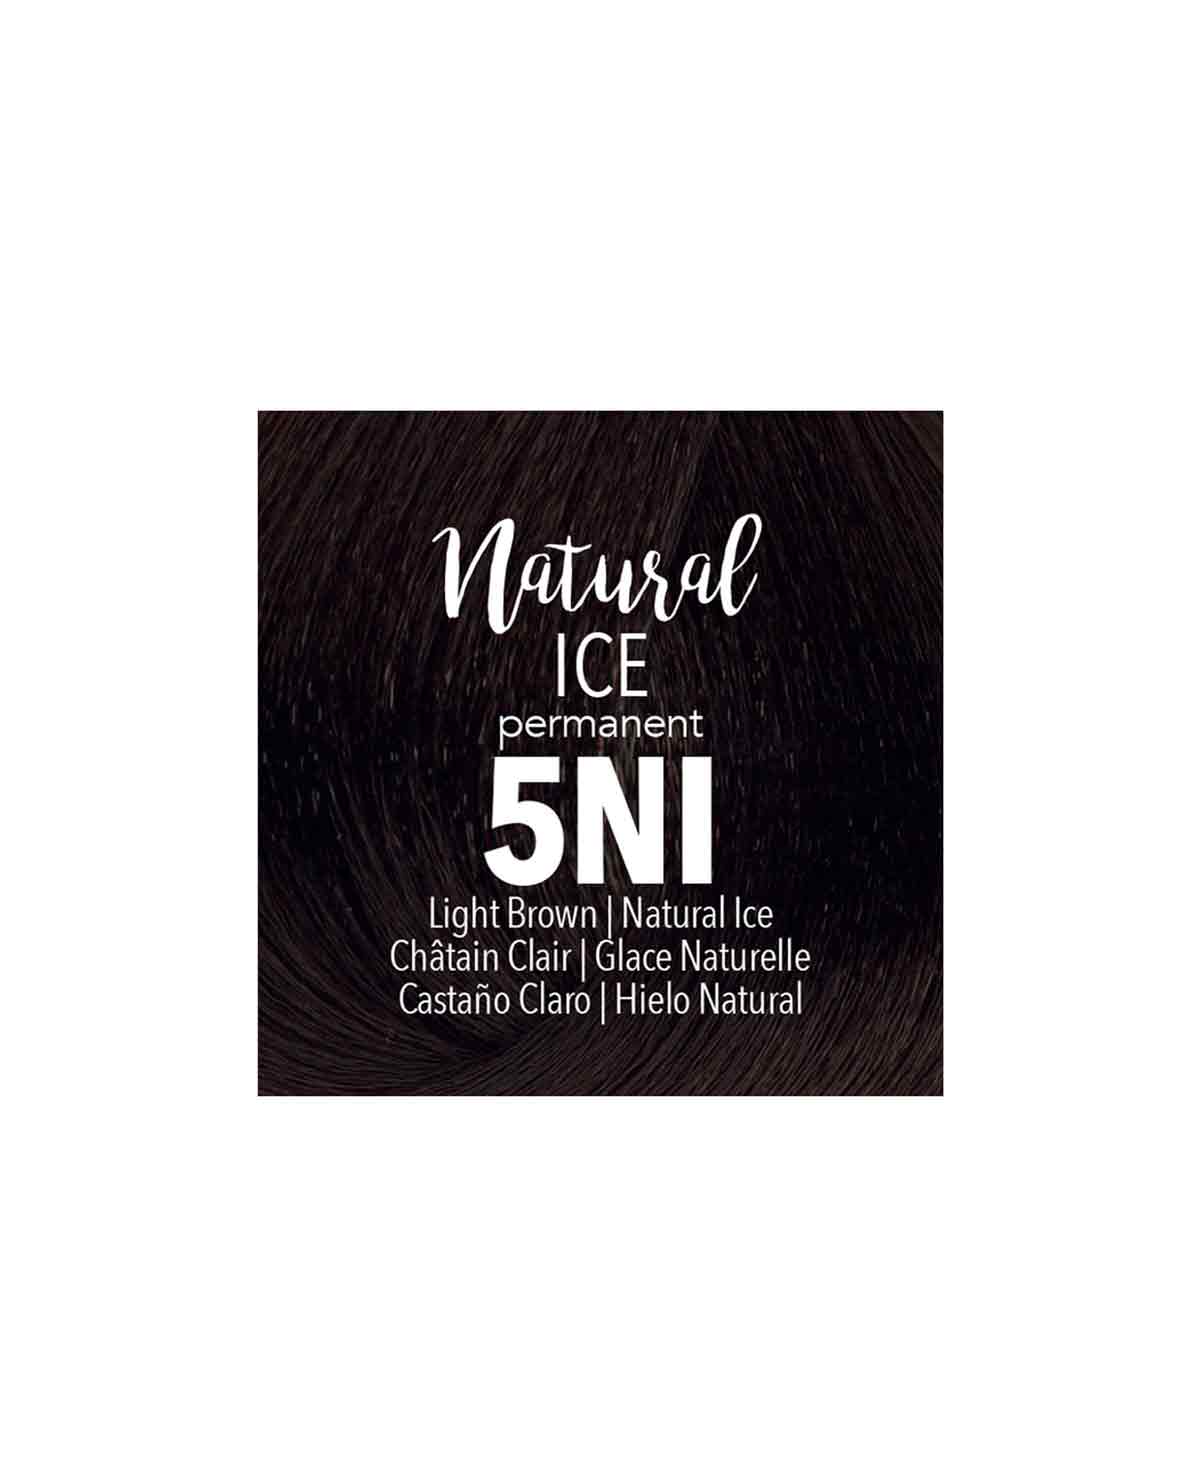 Mydentity - 5NI Light Brown Natural Ice 